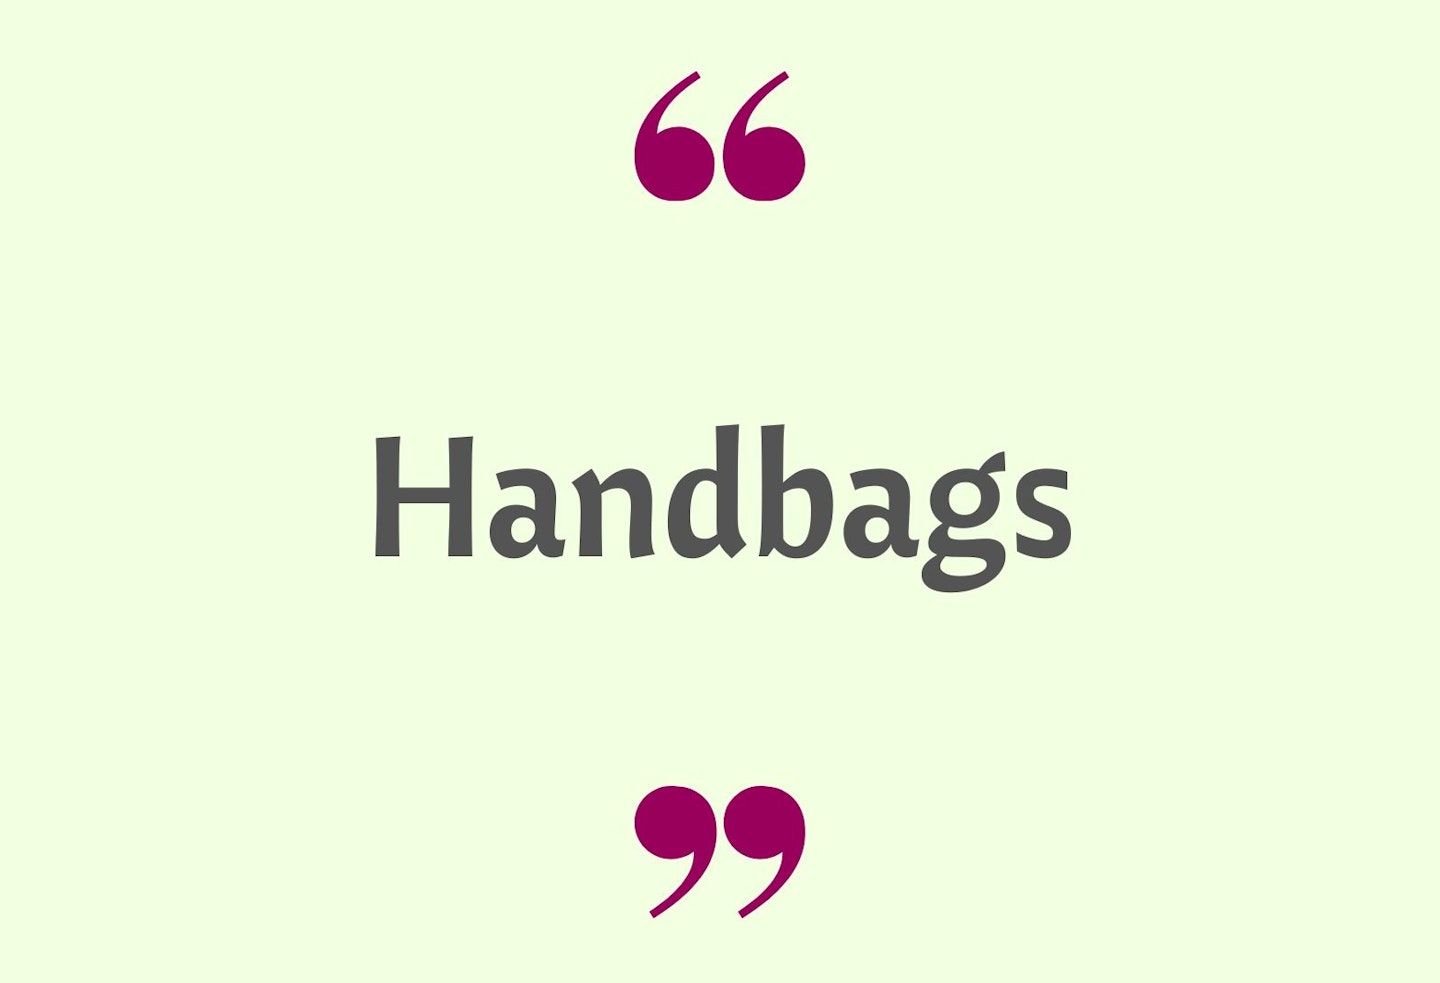 8) Handbags